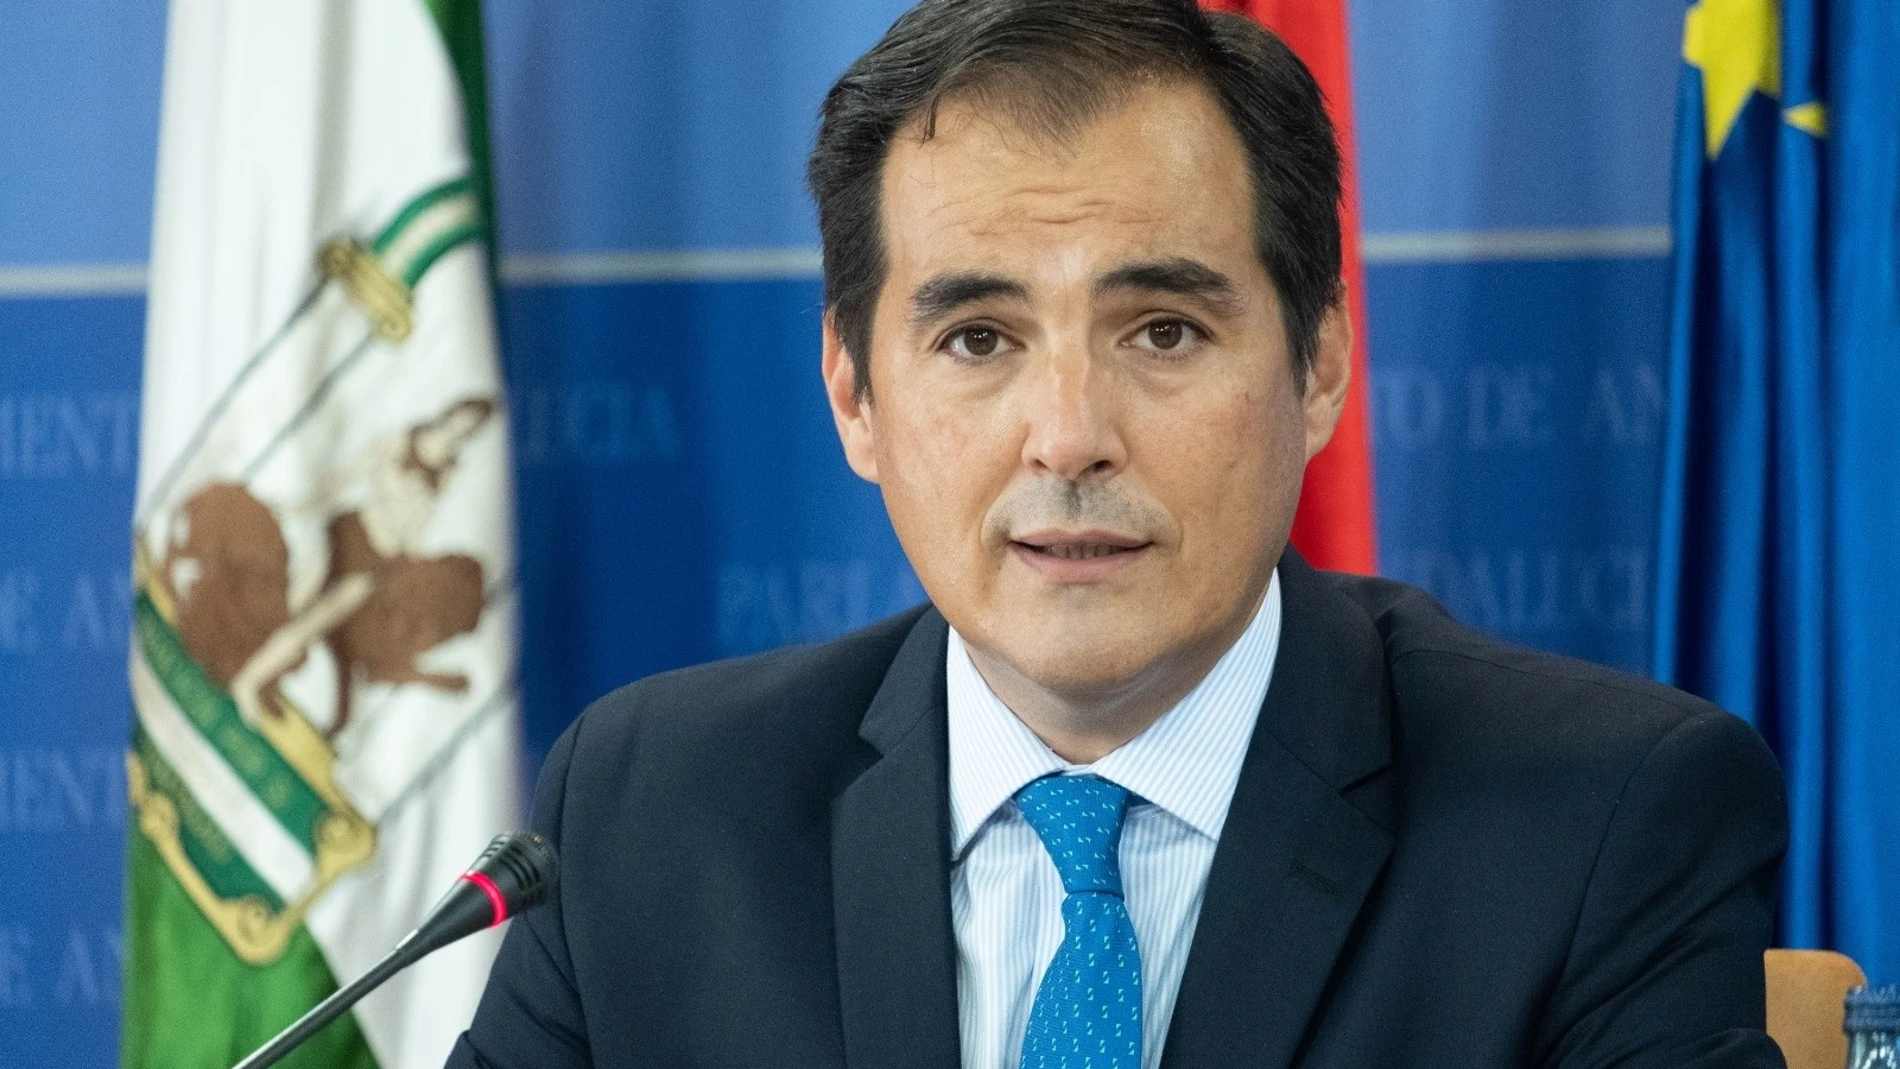 Málaga.-Cvirus.- PP-A asegura que la Junta ha sido "absolutamente transparente", informando a la población y al Gobierno